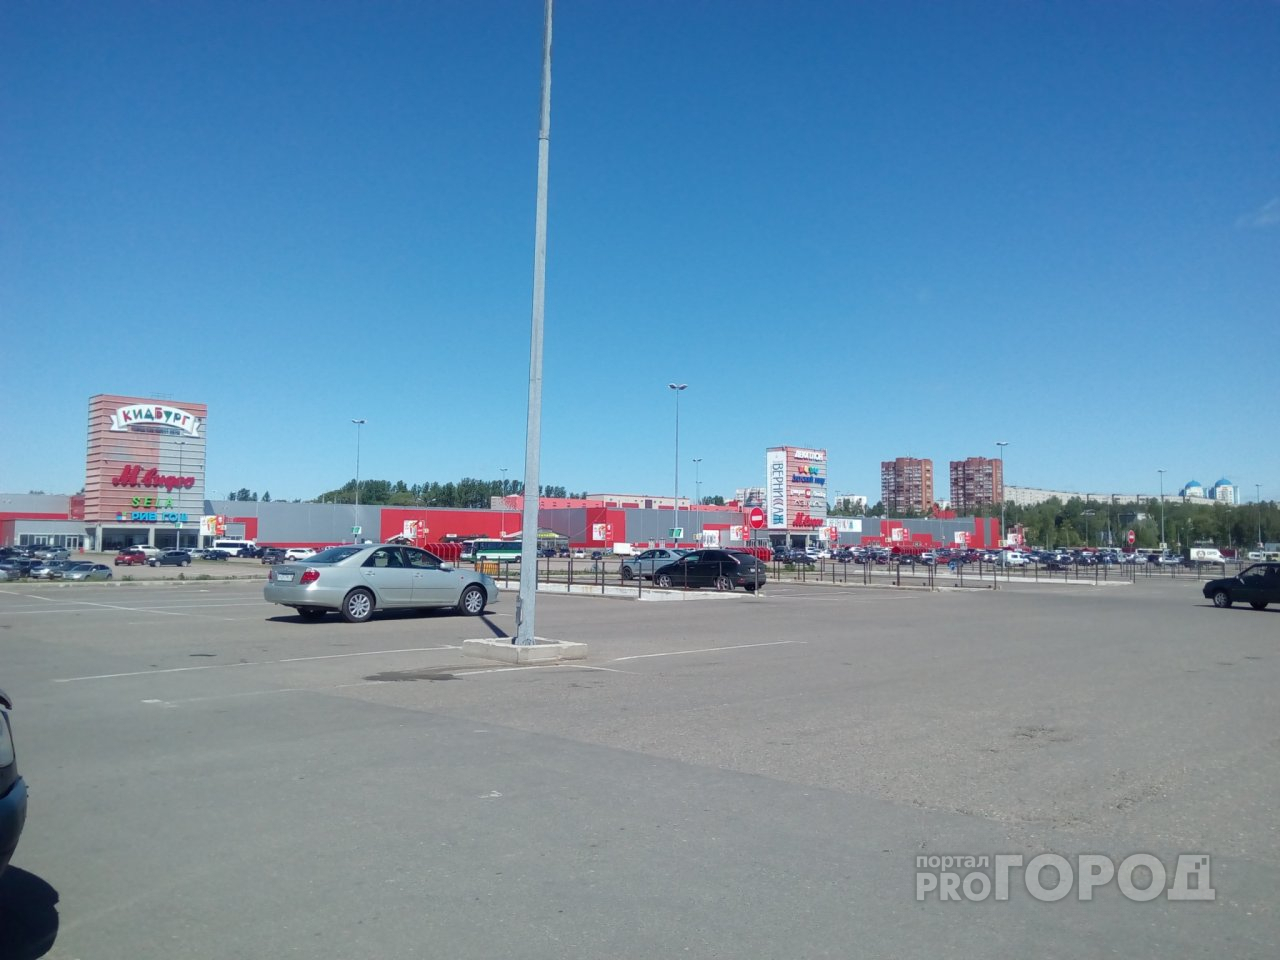 Шерстят водителей у ТЦ: в Ярославле ловили алиментщиков и коммунальных должников